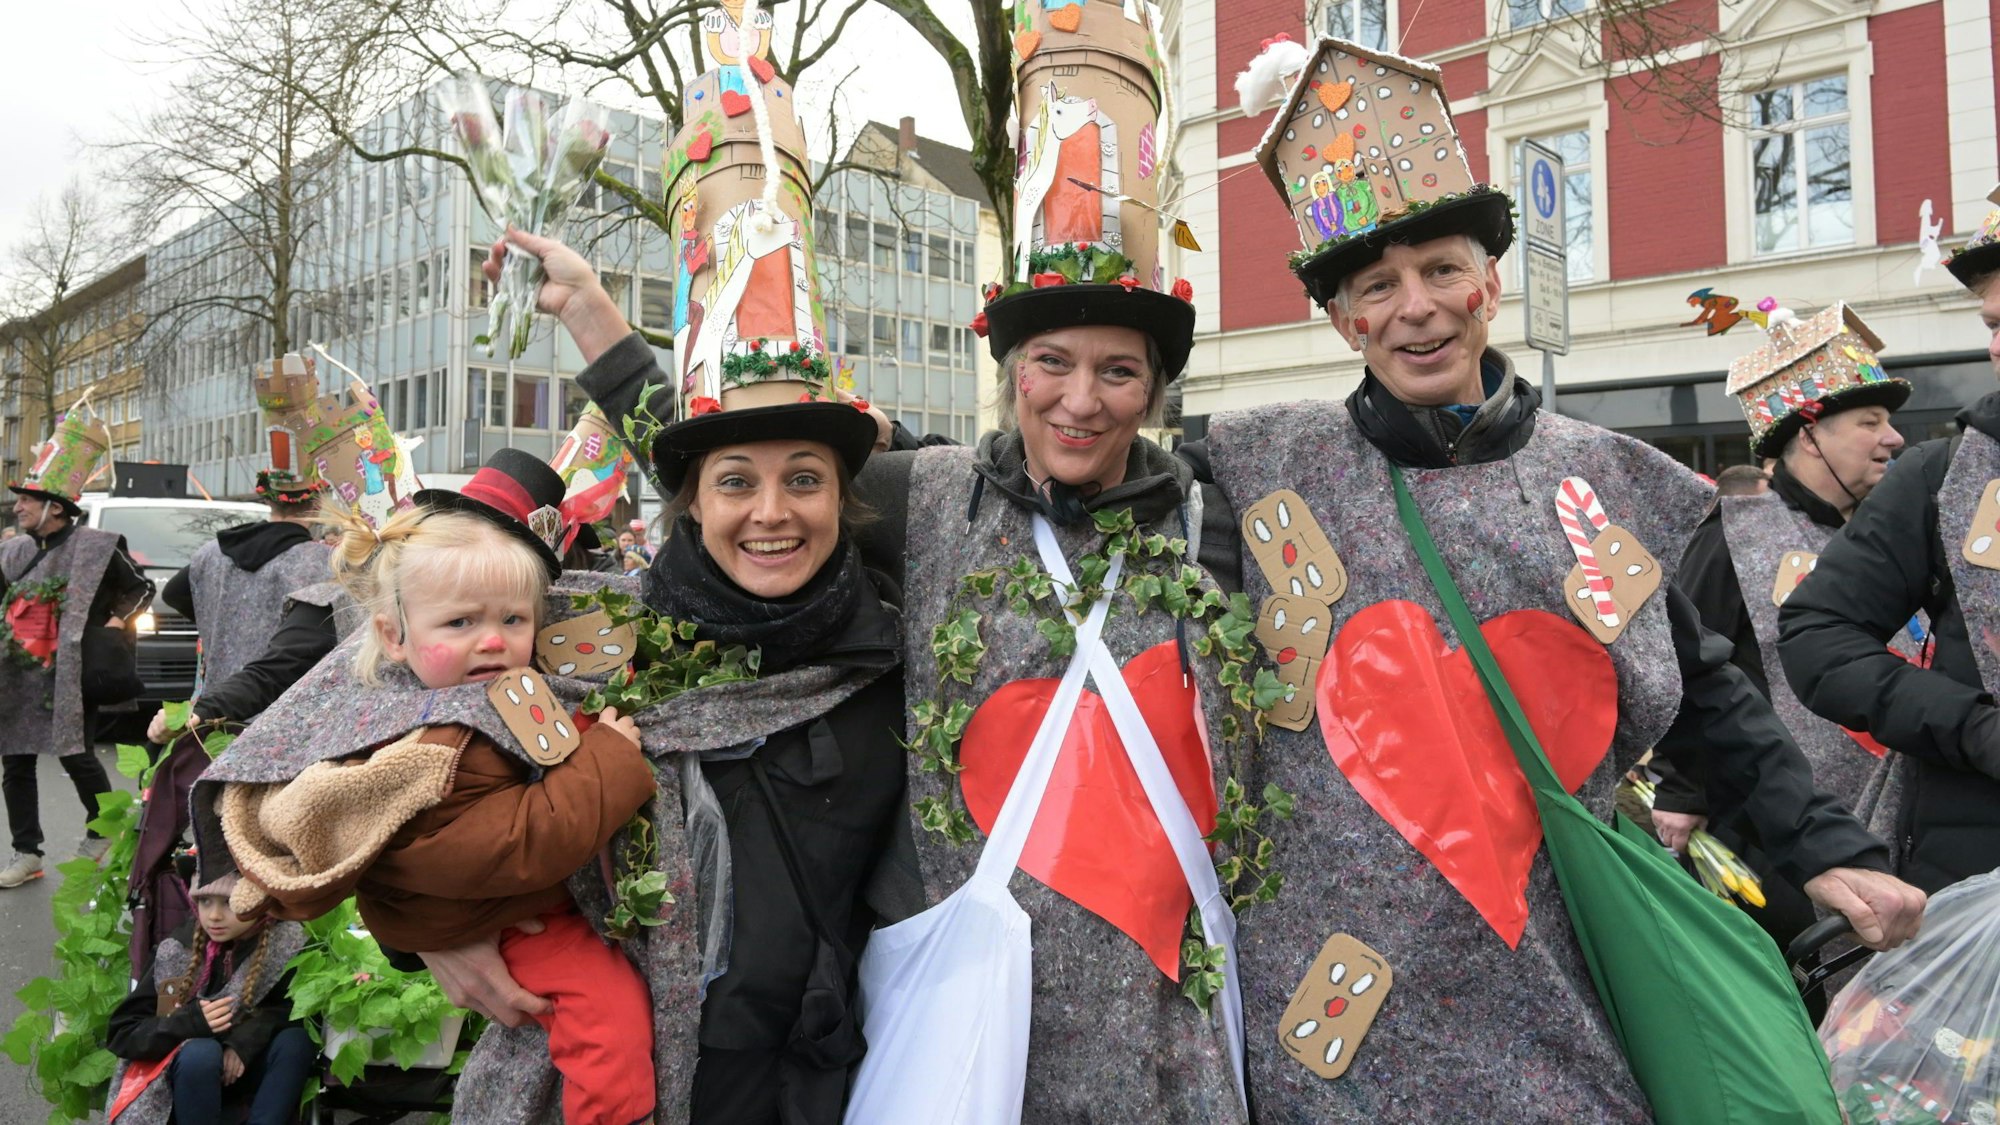 Menschen mit fantasievollen Kostümen und hohen Hüten feiern auf der Straße.